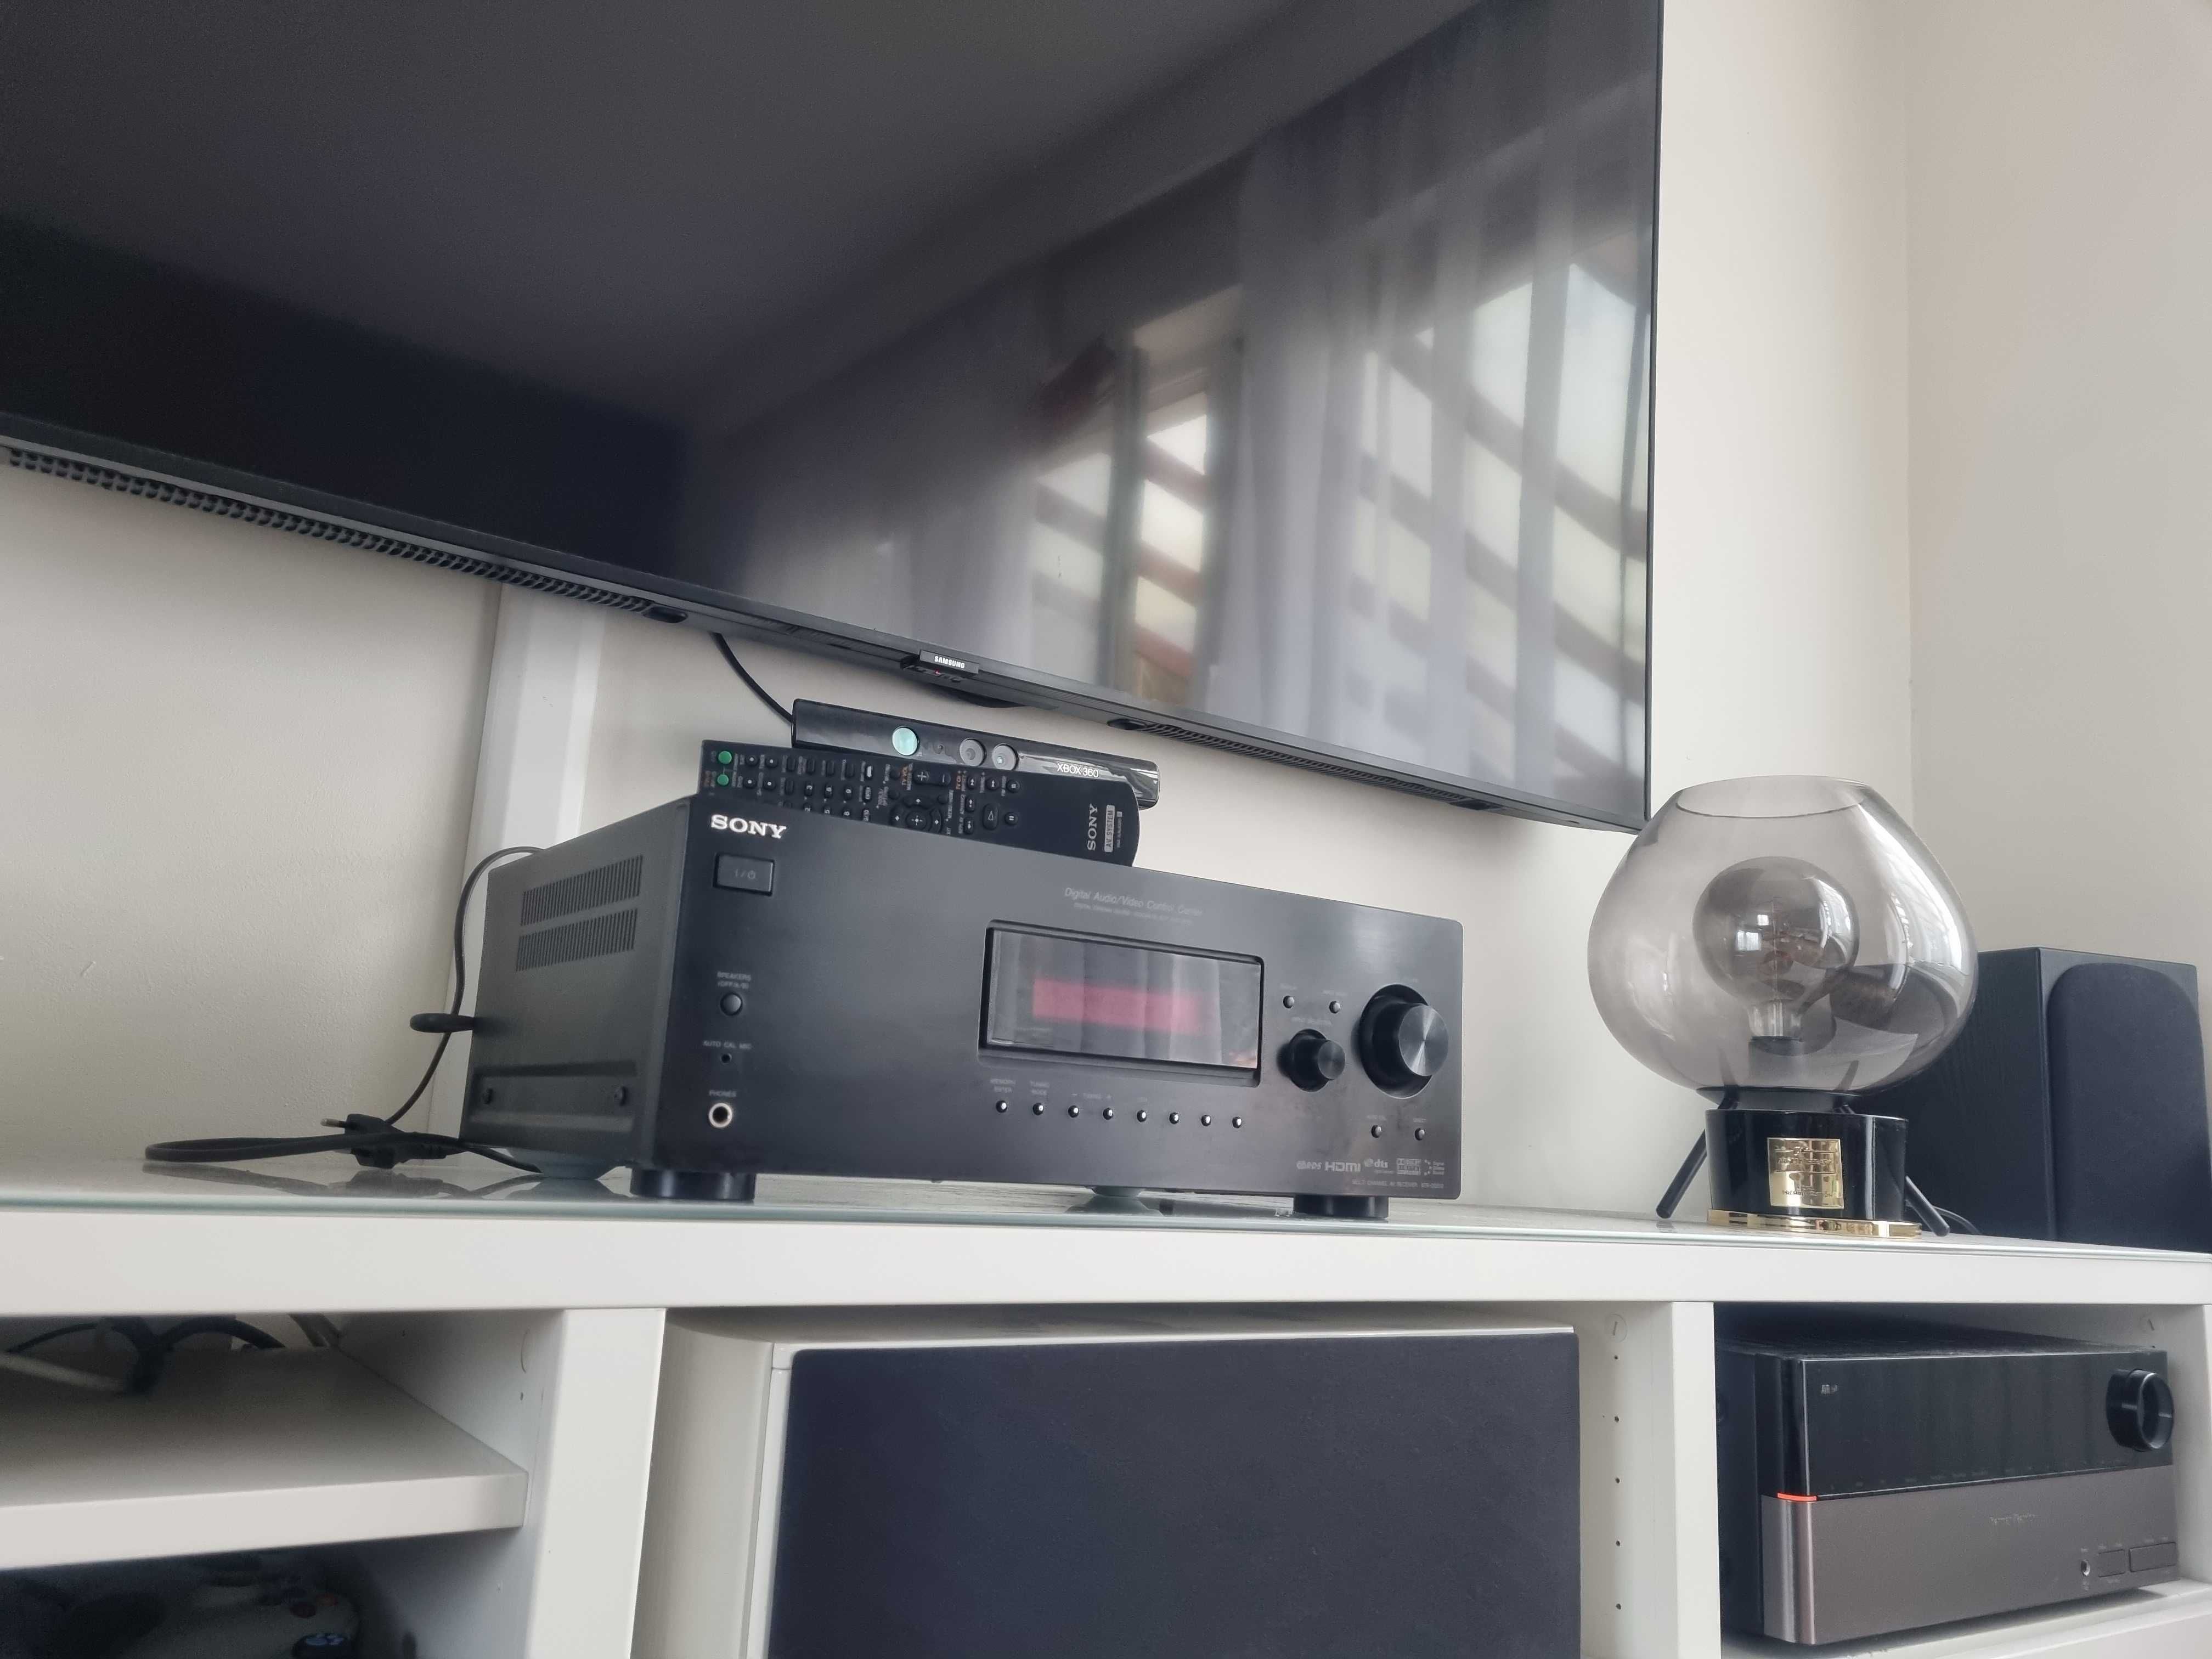 OKAZJA Amplituner wzmacniacz kino domowe stereo Sony str dg 510 hdmi